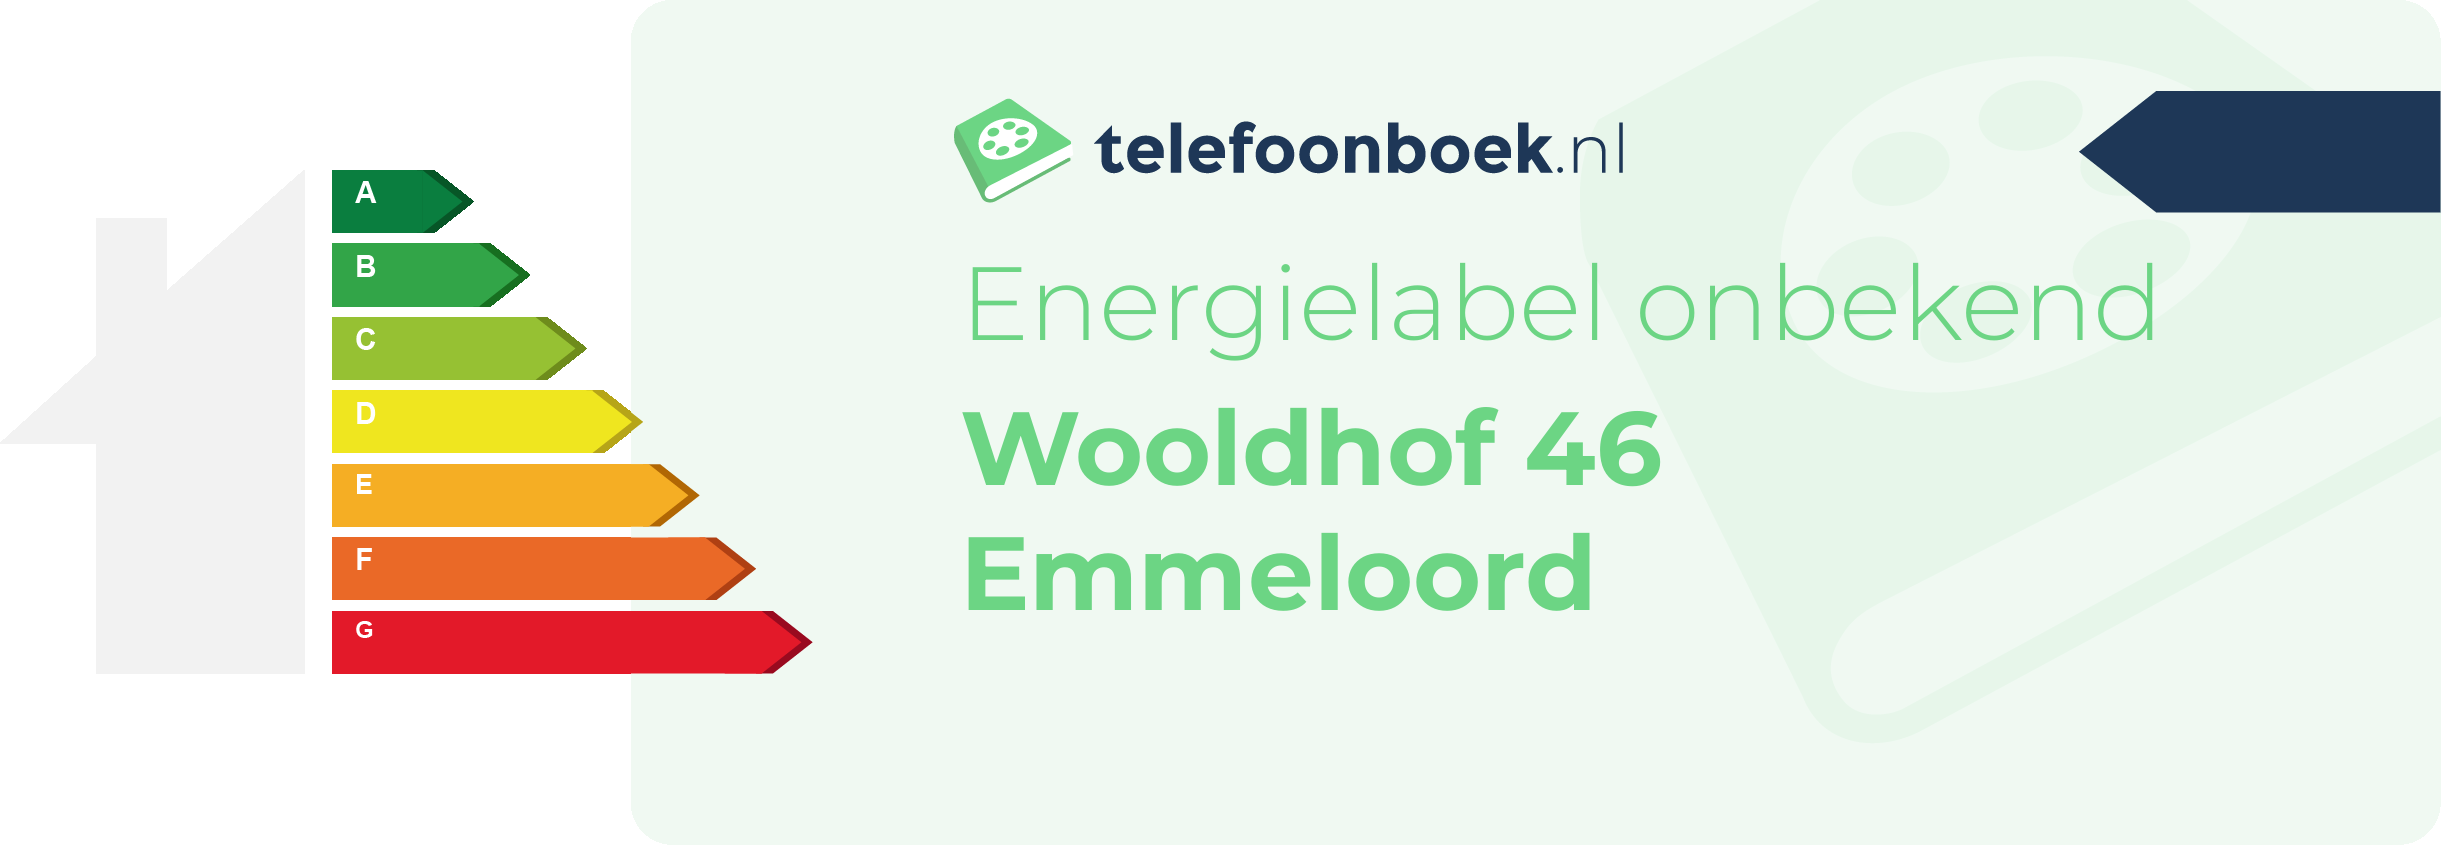 Energielabel Wooldhof 46 Emmeloord